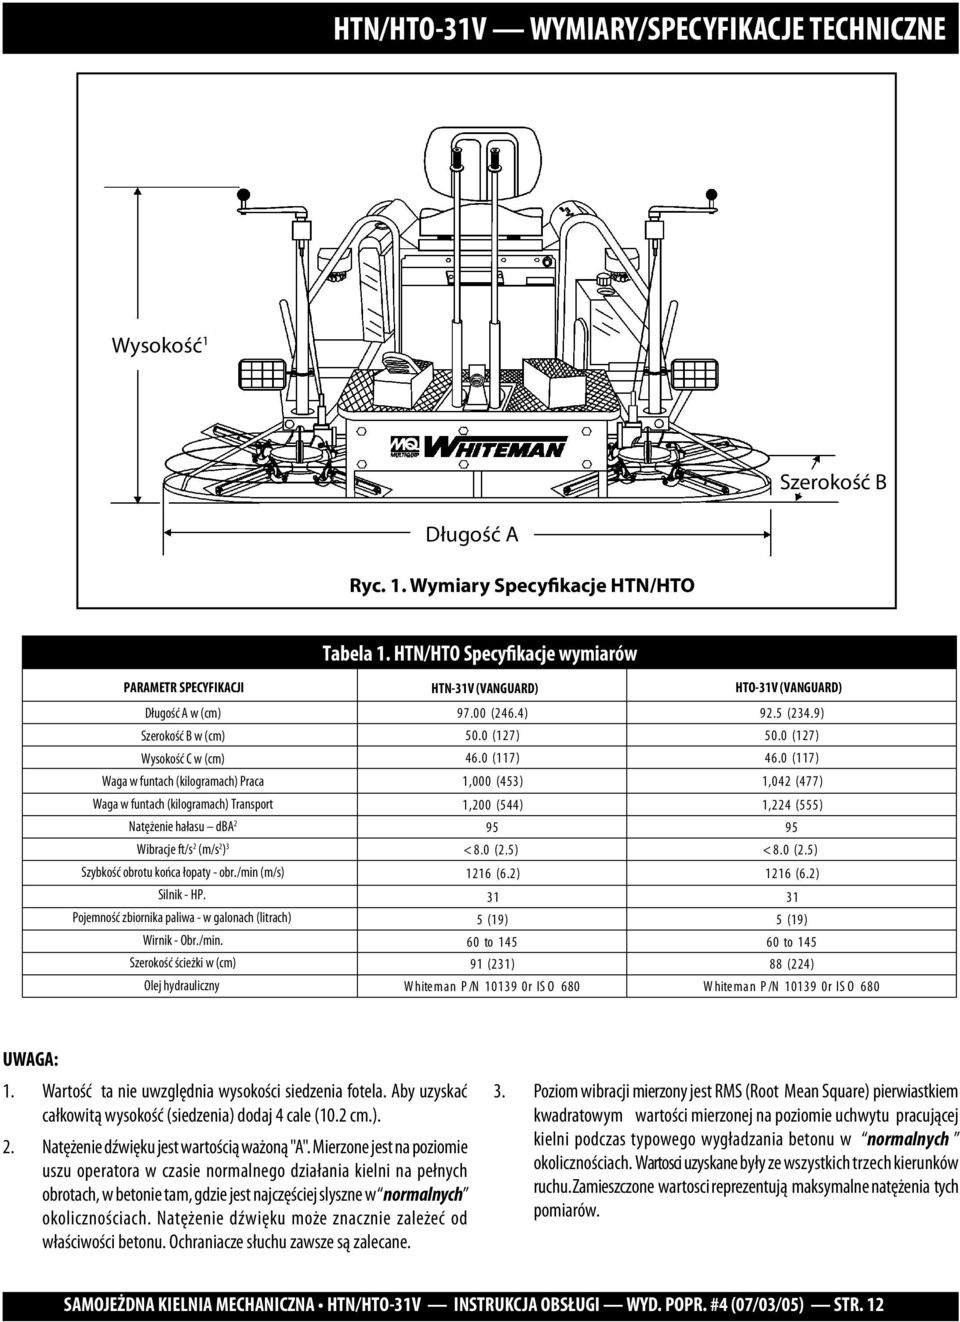 dba 2 Wibracje ft/s 2 (m/s 2 ) 3 Szybkość obrotu końca łopaty - obr./min (m/s) Silnik - HP. Pojemność zbiornika paliwa - w galonach (litrach) Wirnik - Obr./min. Szerokość ścieżki w (cm) Olej hydrauliczny HTN-31V (VANGUARD) 97.